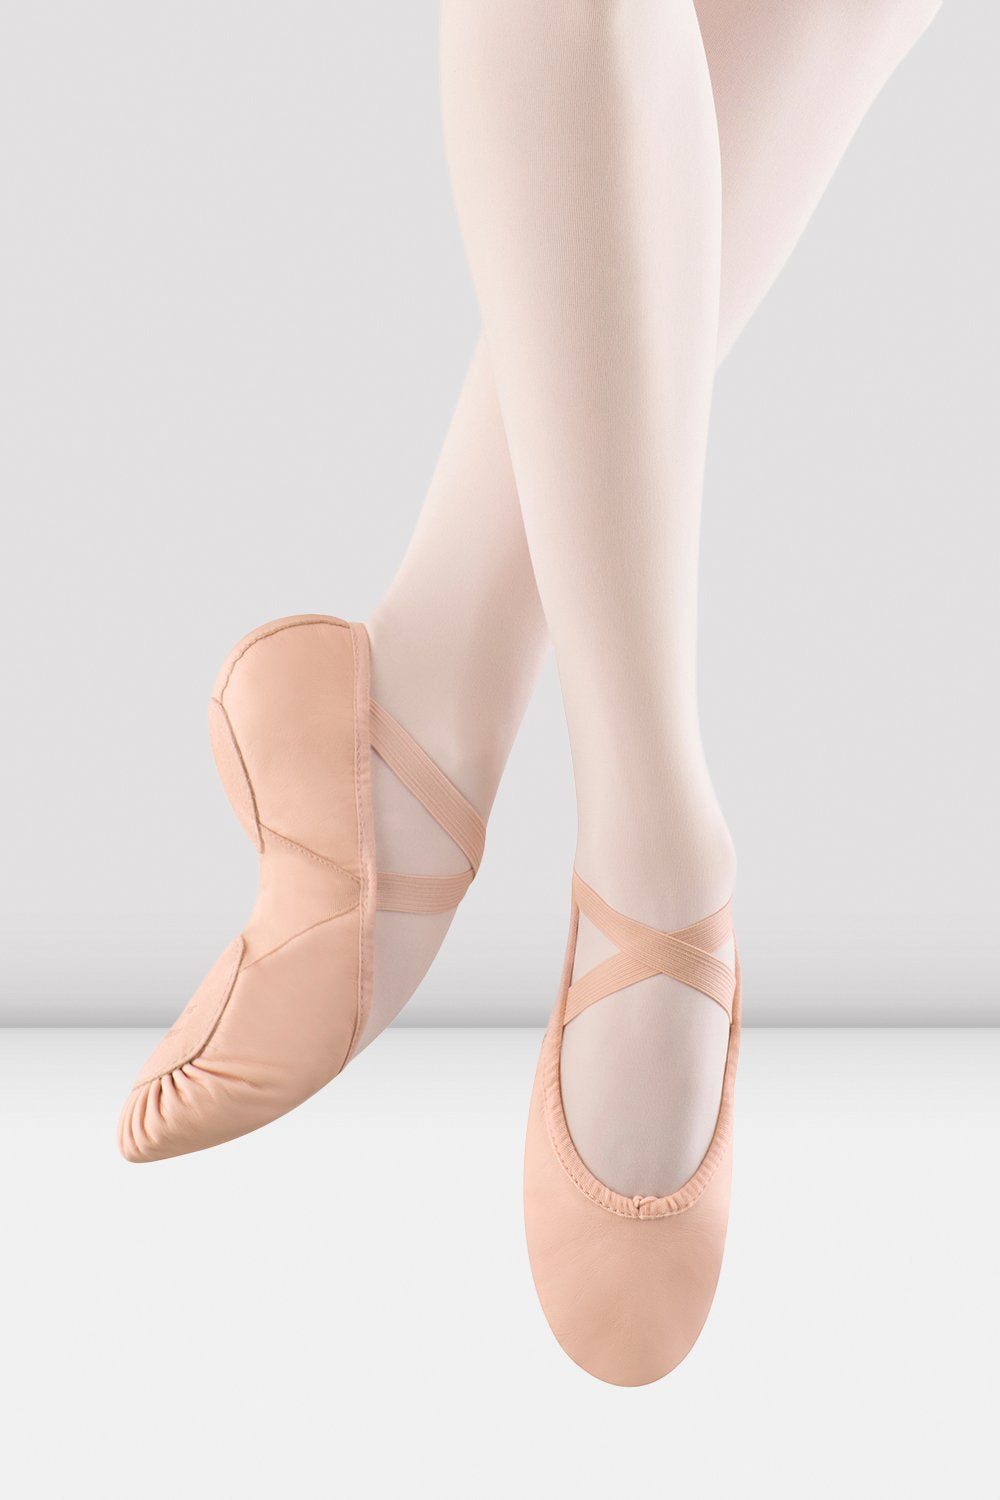 Bloch S0203L Prolite II  Leather & Canvas Split-Sole PINK Ballet Shoe